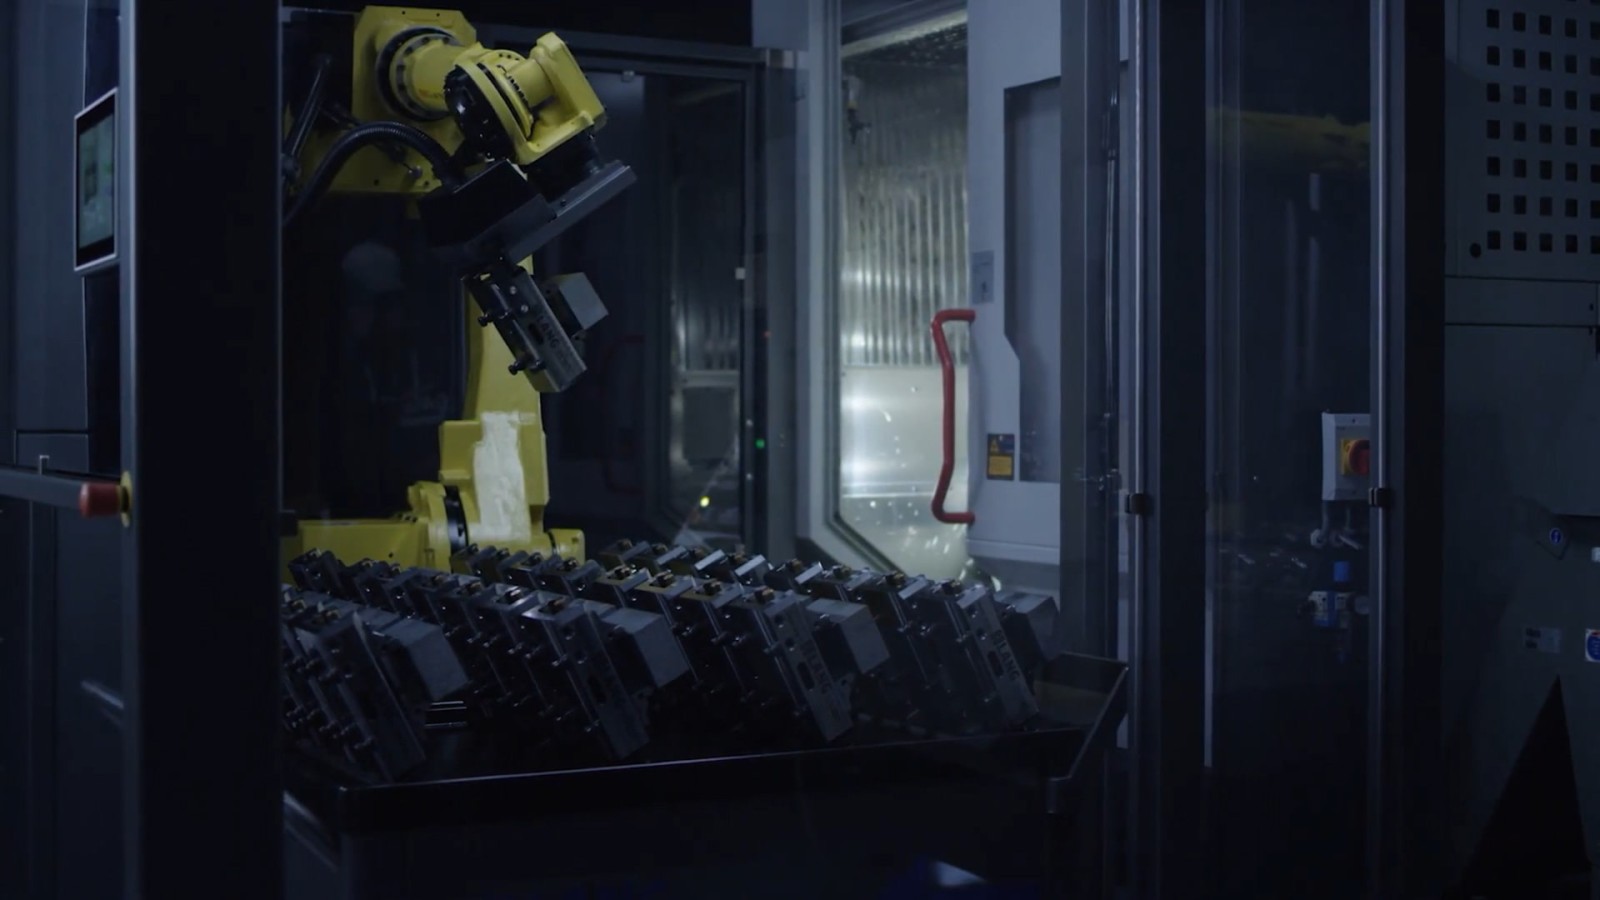 RoboTrex 96: automatización en una nueva dimensión